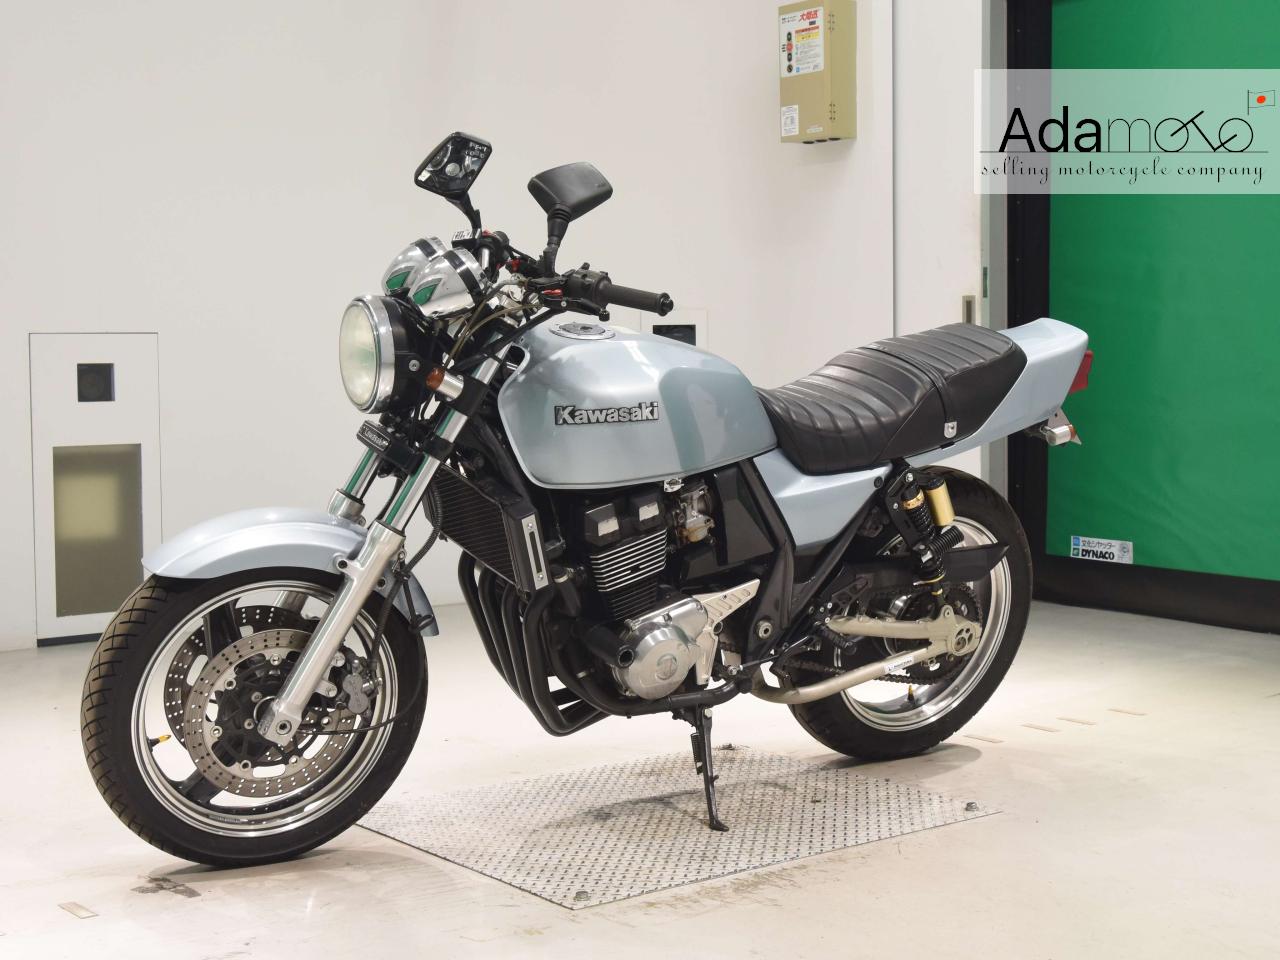 Kawasaki ZRX 2 - Adamoto - Motorcycles from Japan